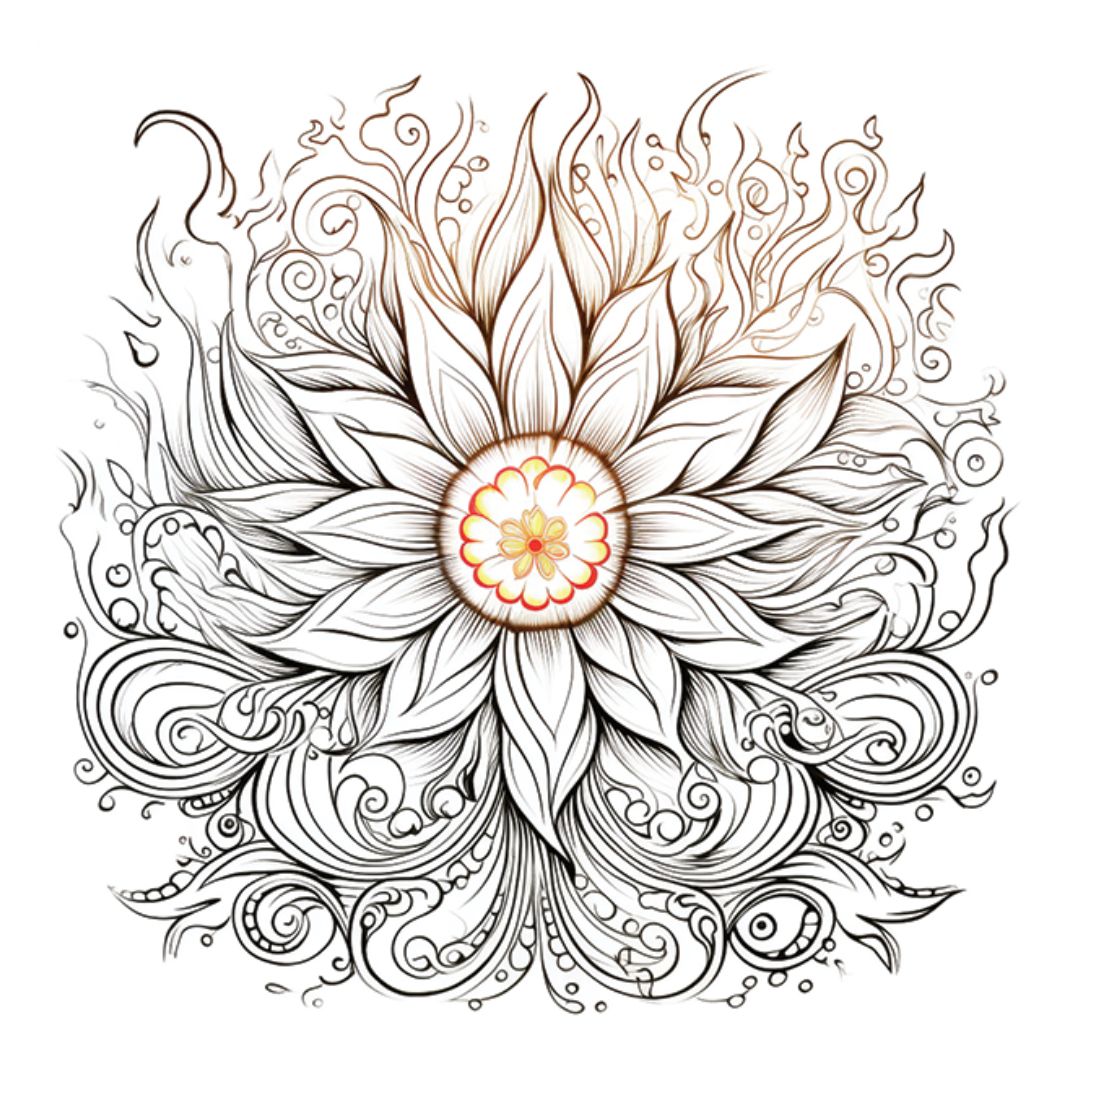 Mandala - Colouring patterns & Mandala Creator